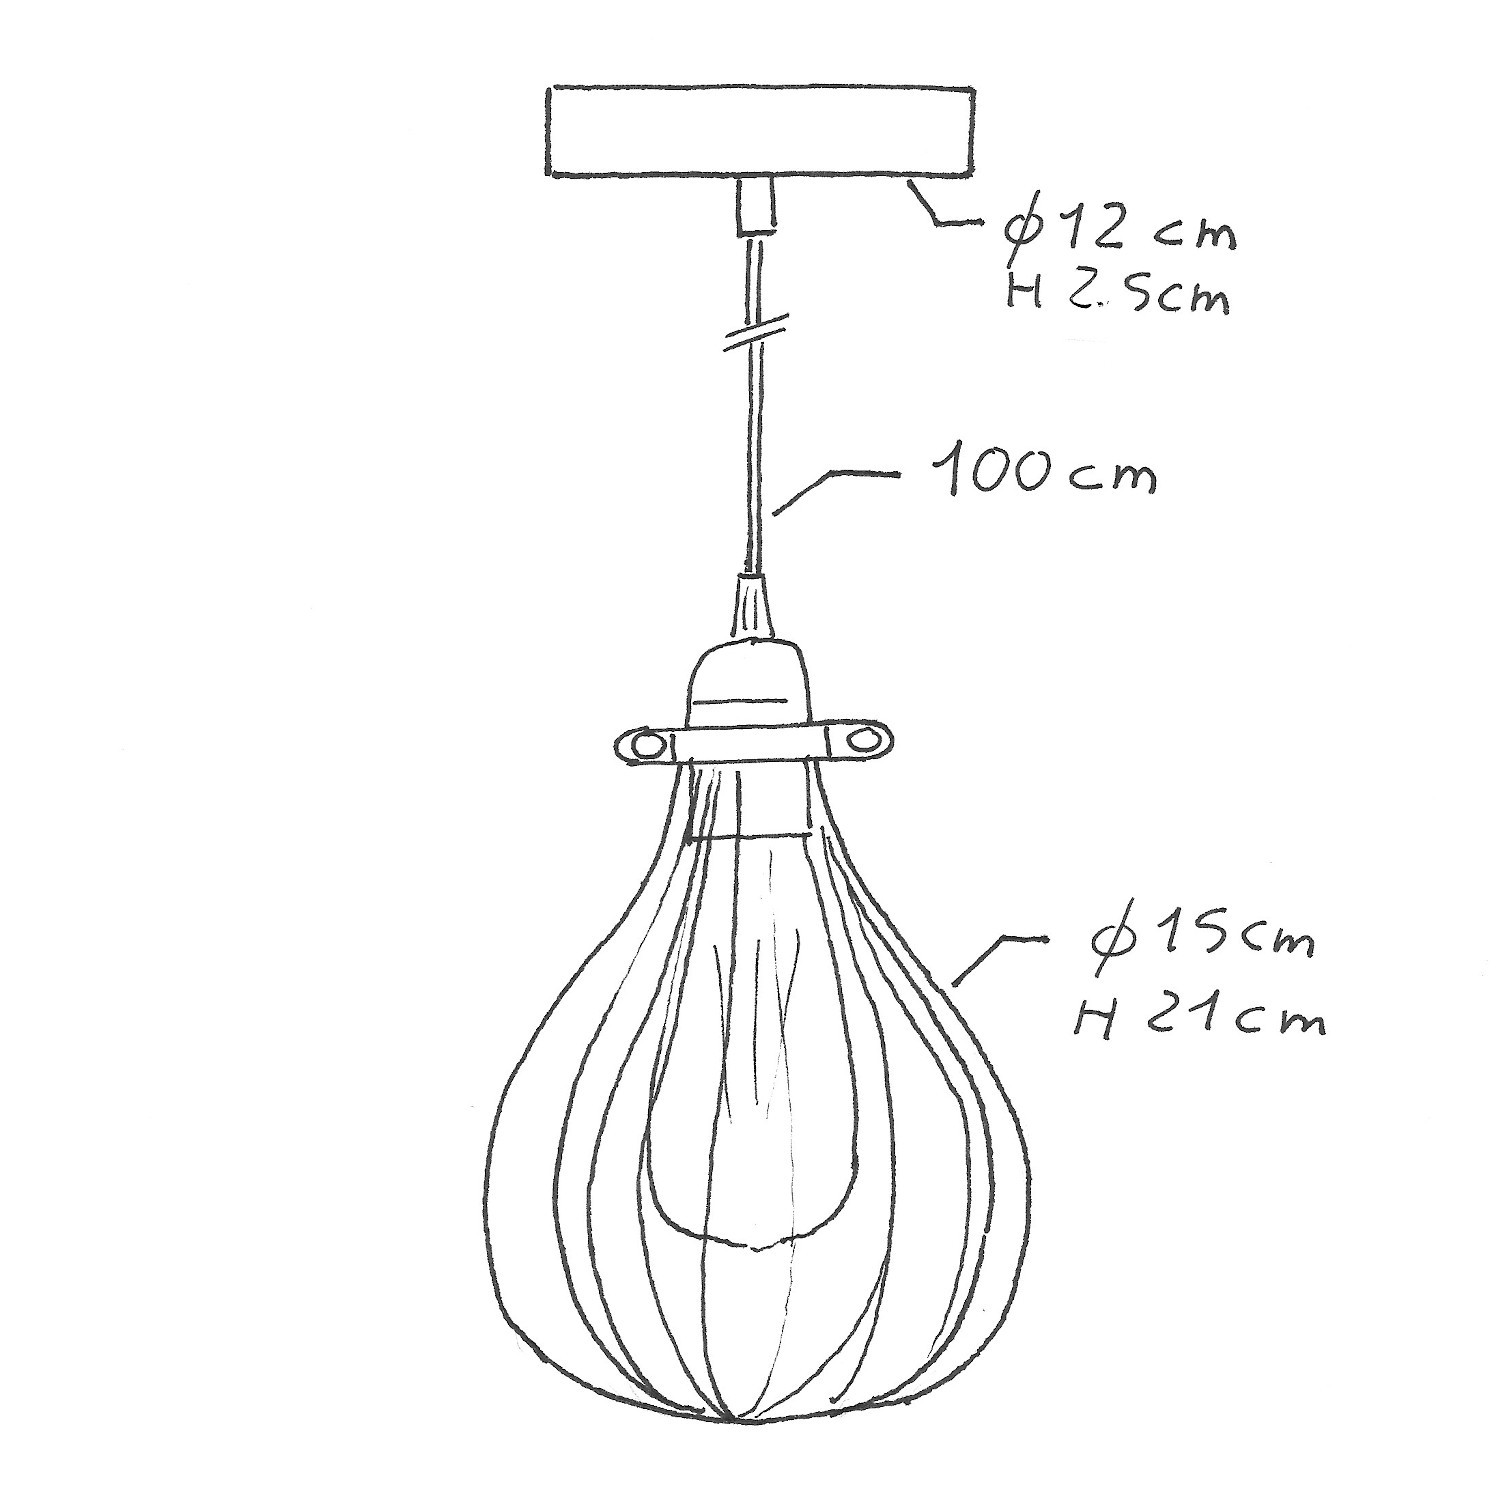 Lámpara colgante hecha en Italia con cable textil, pantalla jaula Drop y acabados metálicos